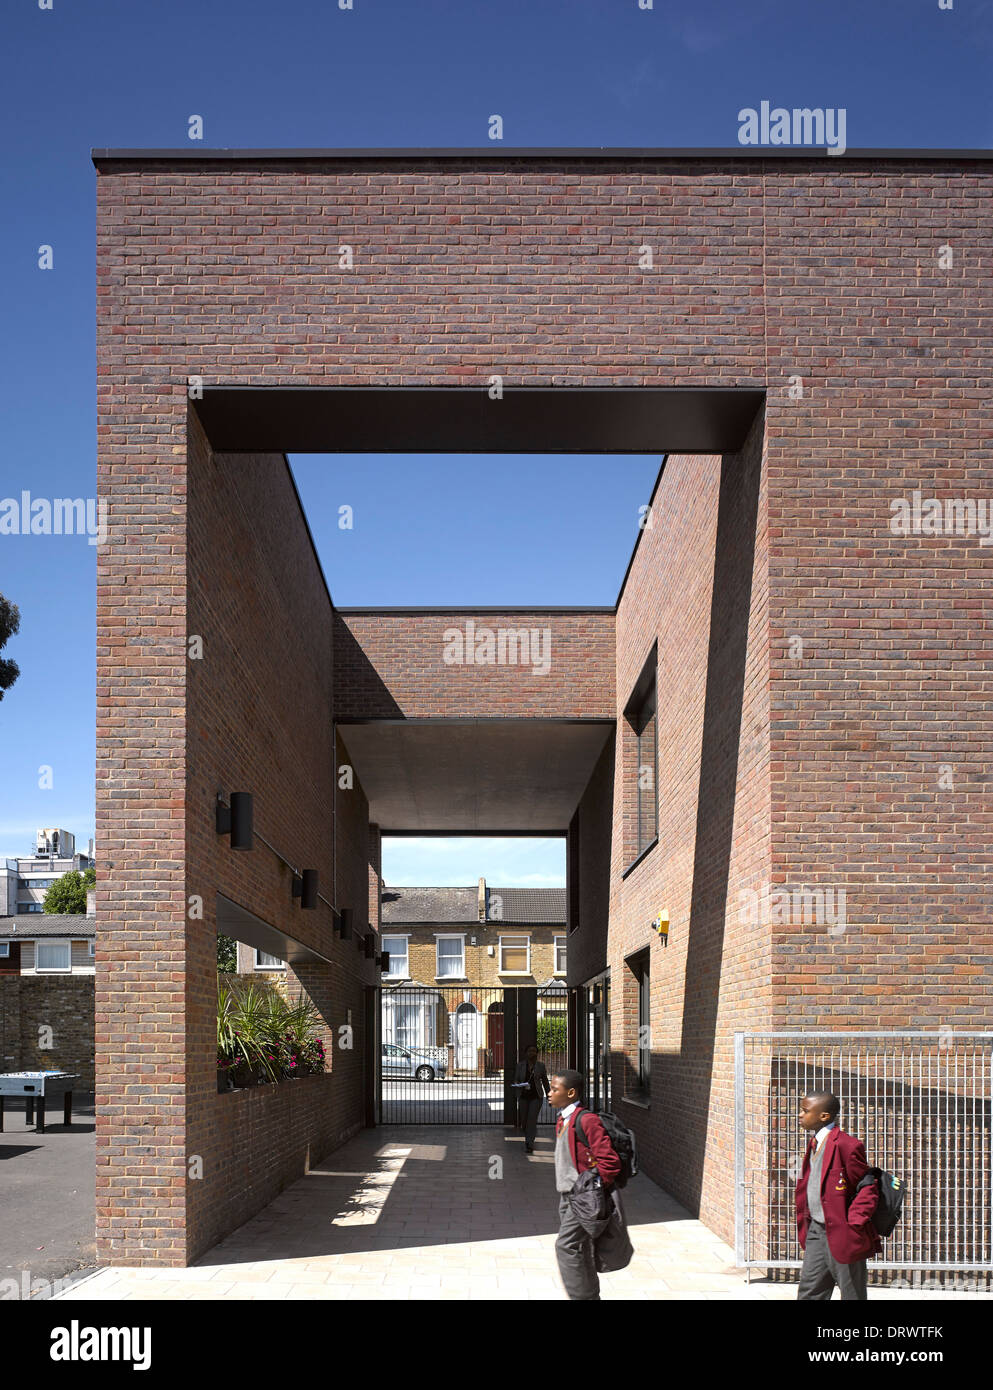 L'Apôtre saint Thomas College, Londres, Royaume-Uni. Architecte : Alliés et Morrison, 2013. Vue extérieure globale. Banque D'Images